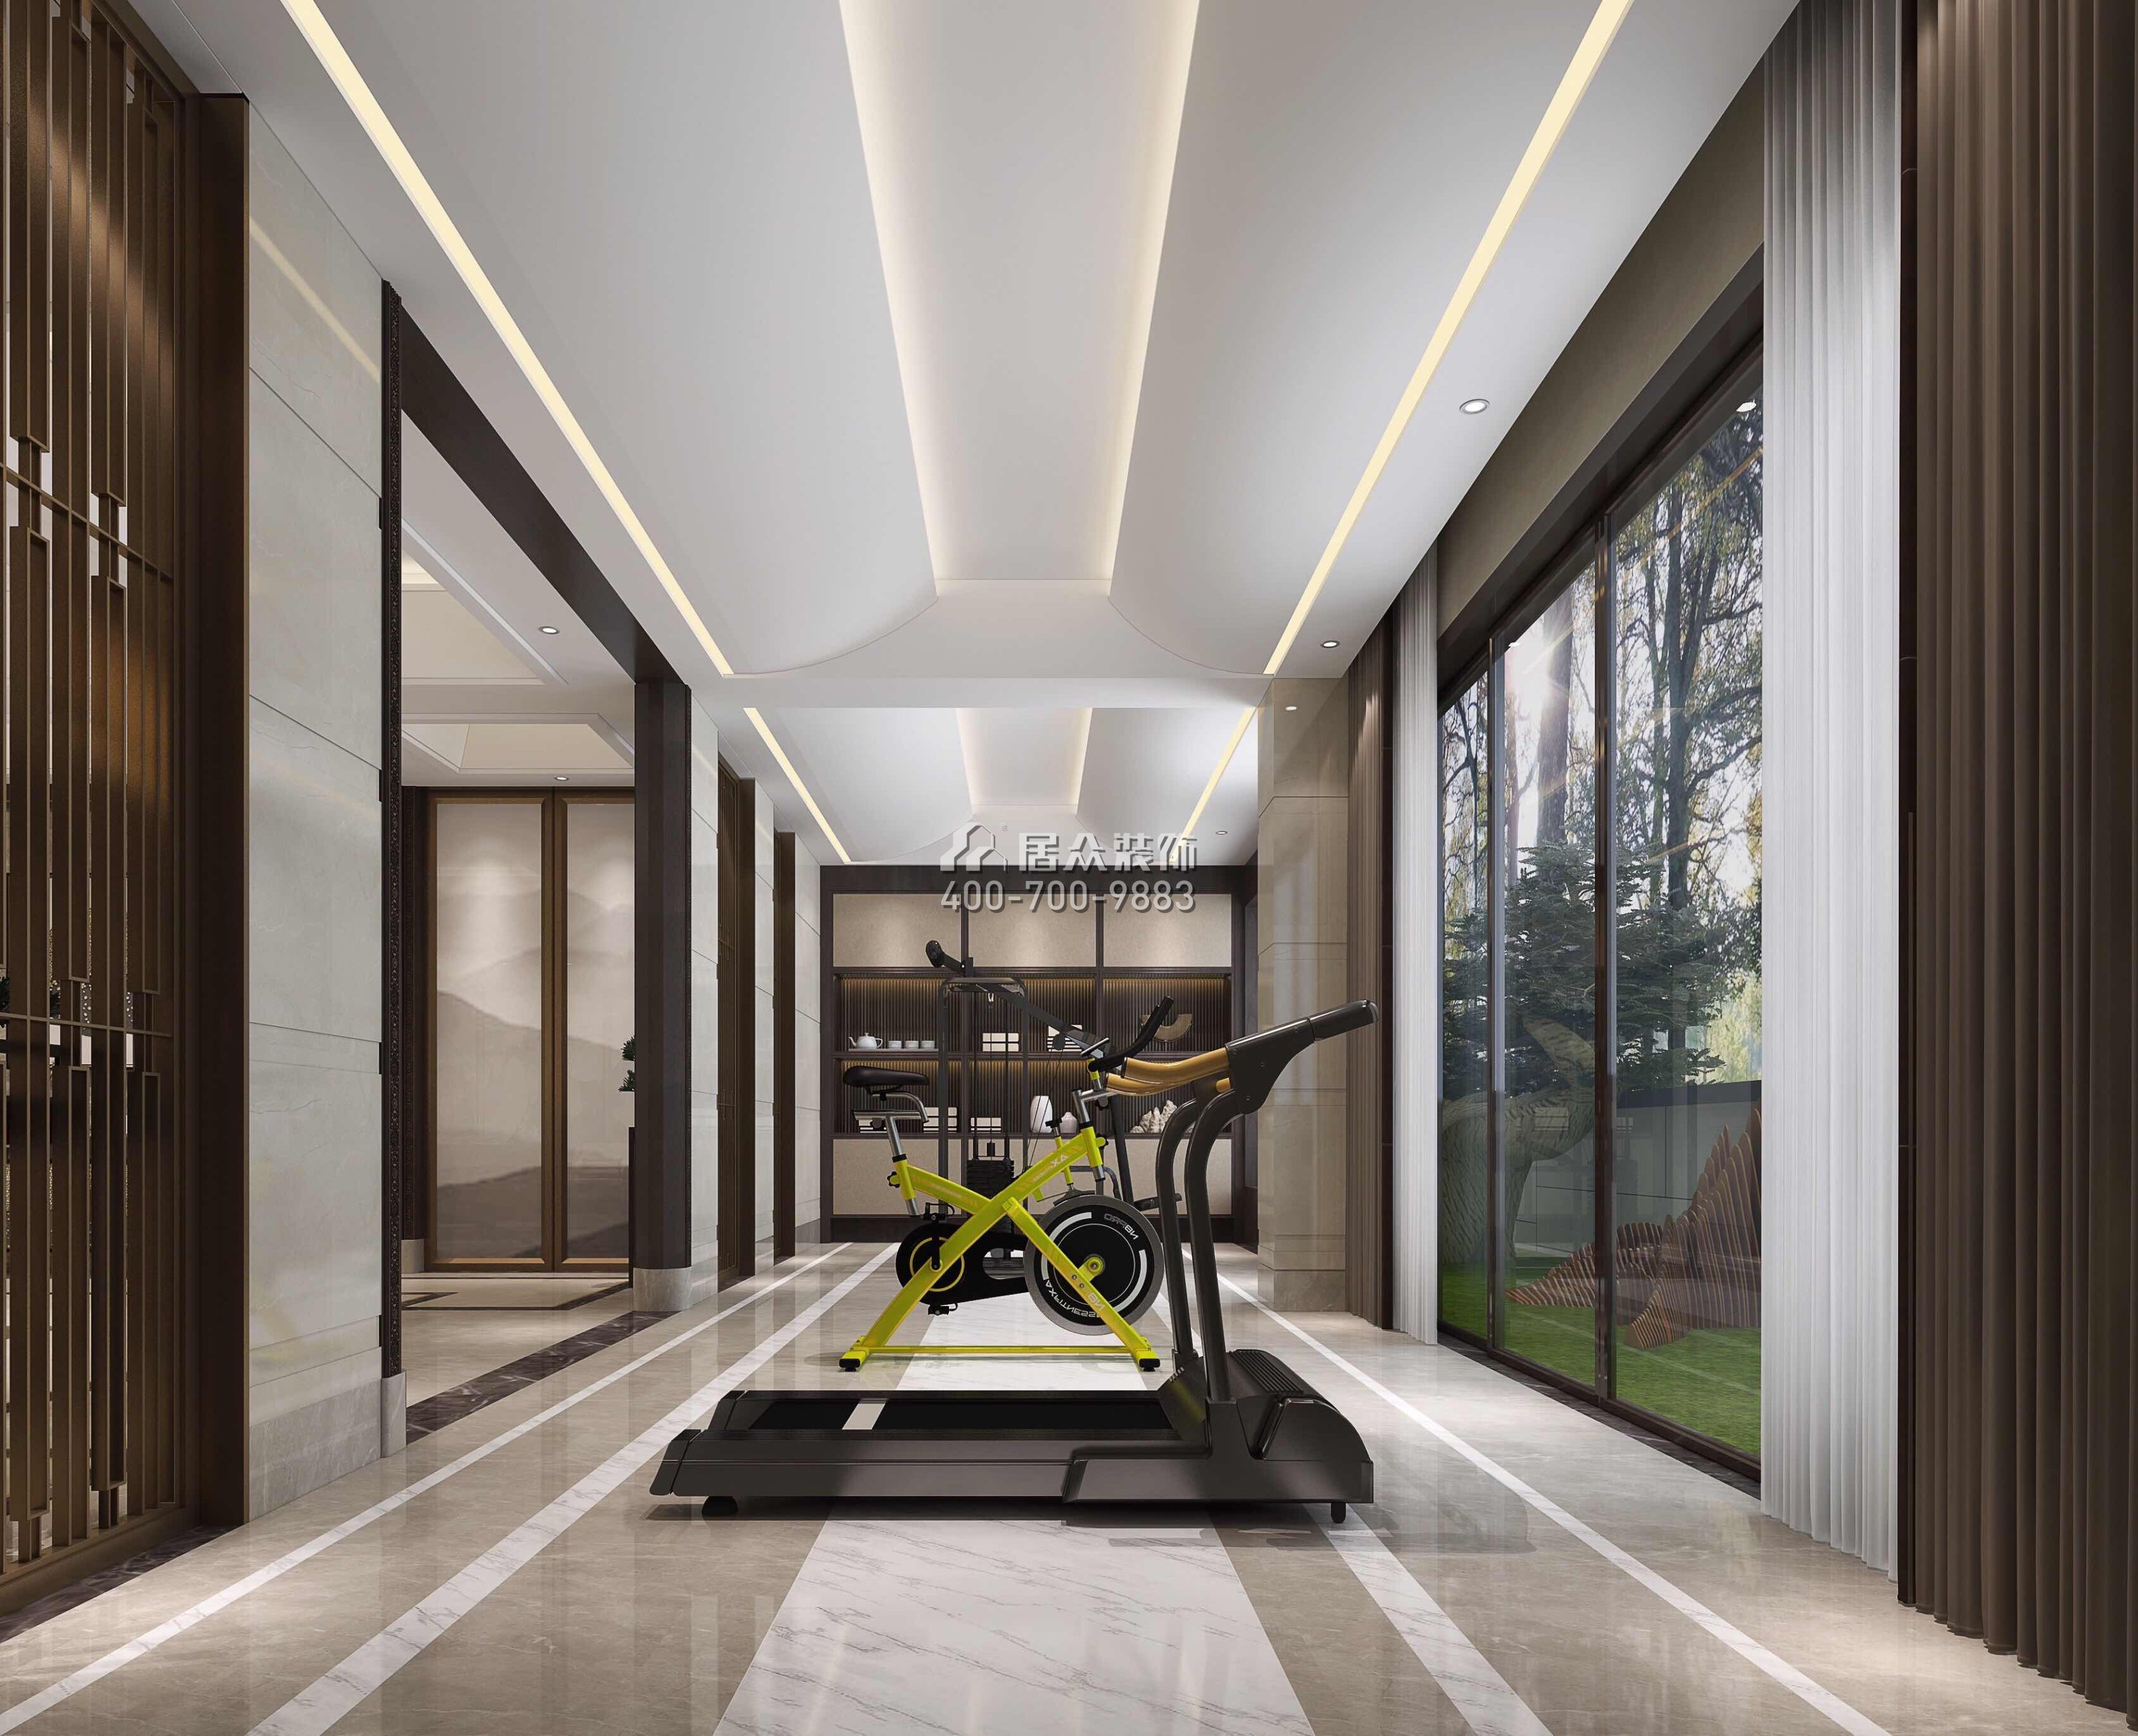 江畔豪庭500平方米中式風格別墅戶型家庭健身房裝修效果圖